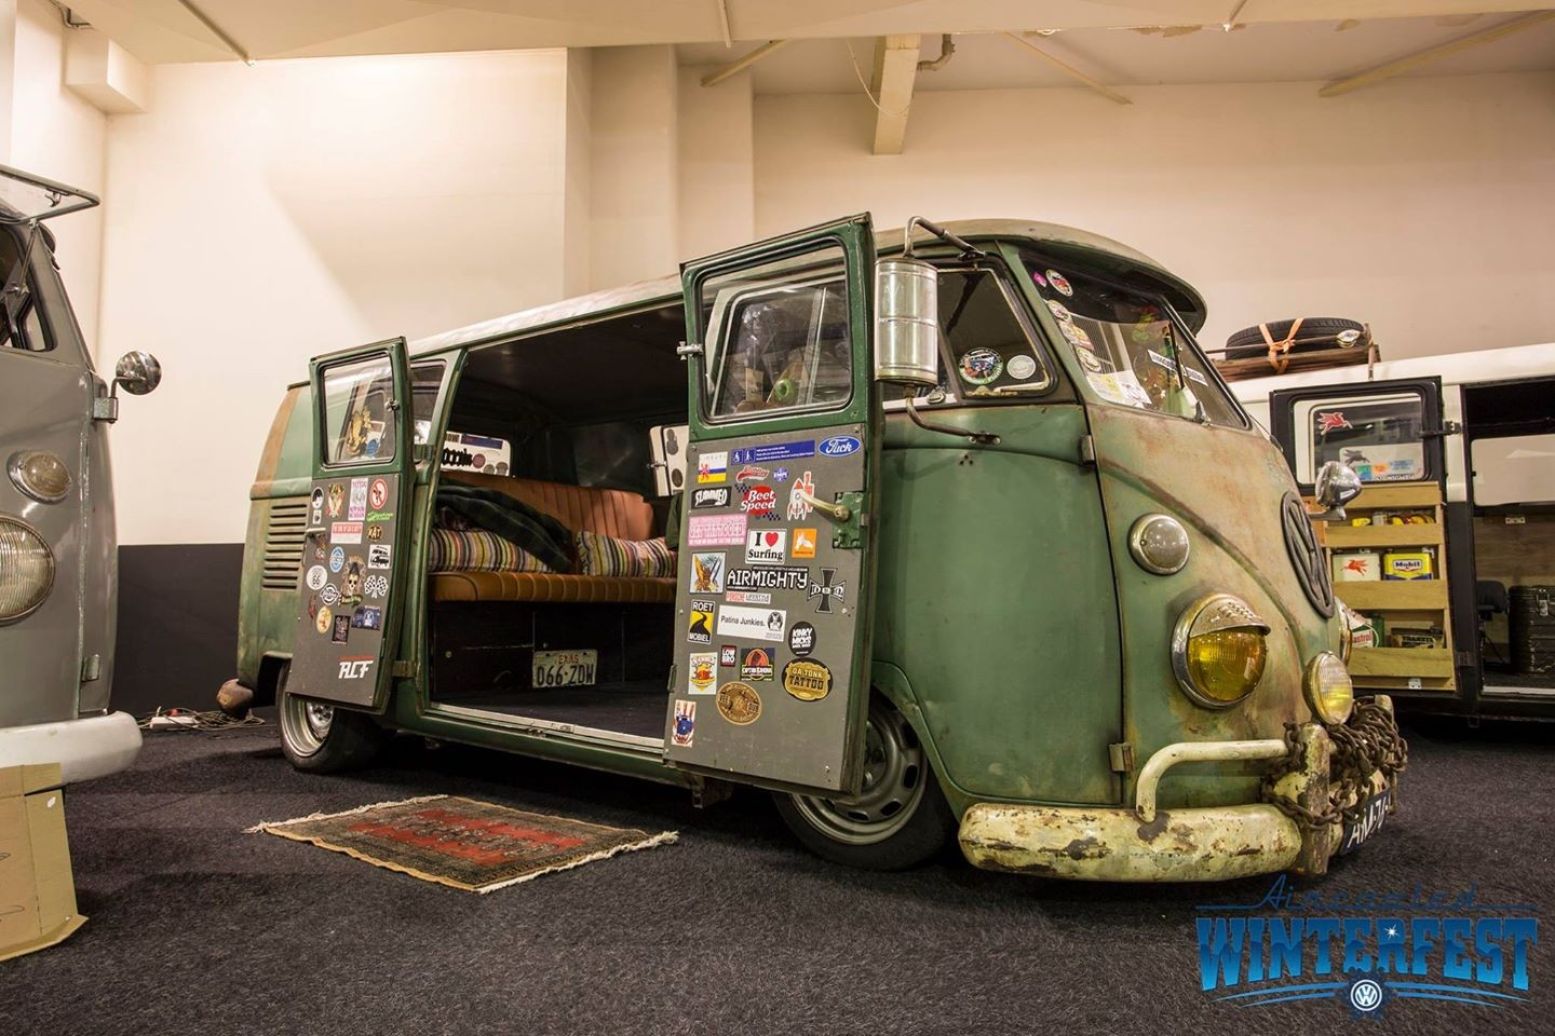 Natuurlijk mag de beroemde Volkswagen bus niet ontbreken. Foto: Aircooled Winterfest.